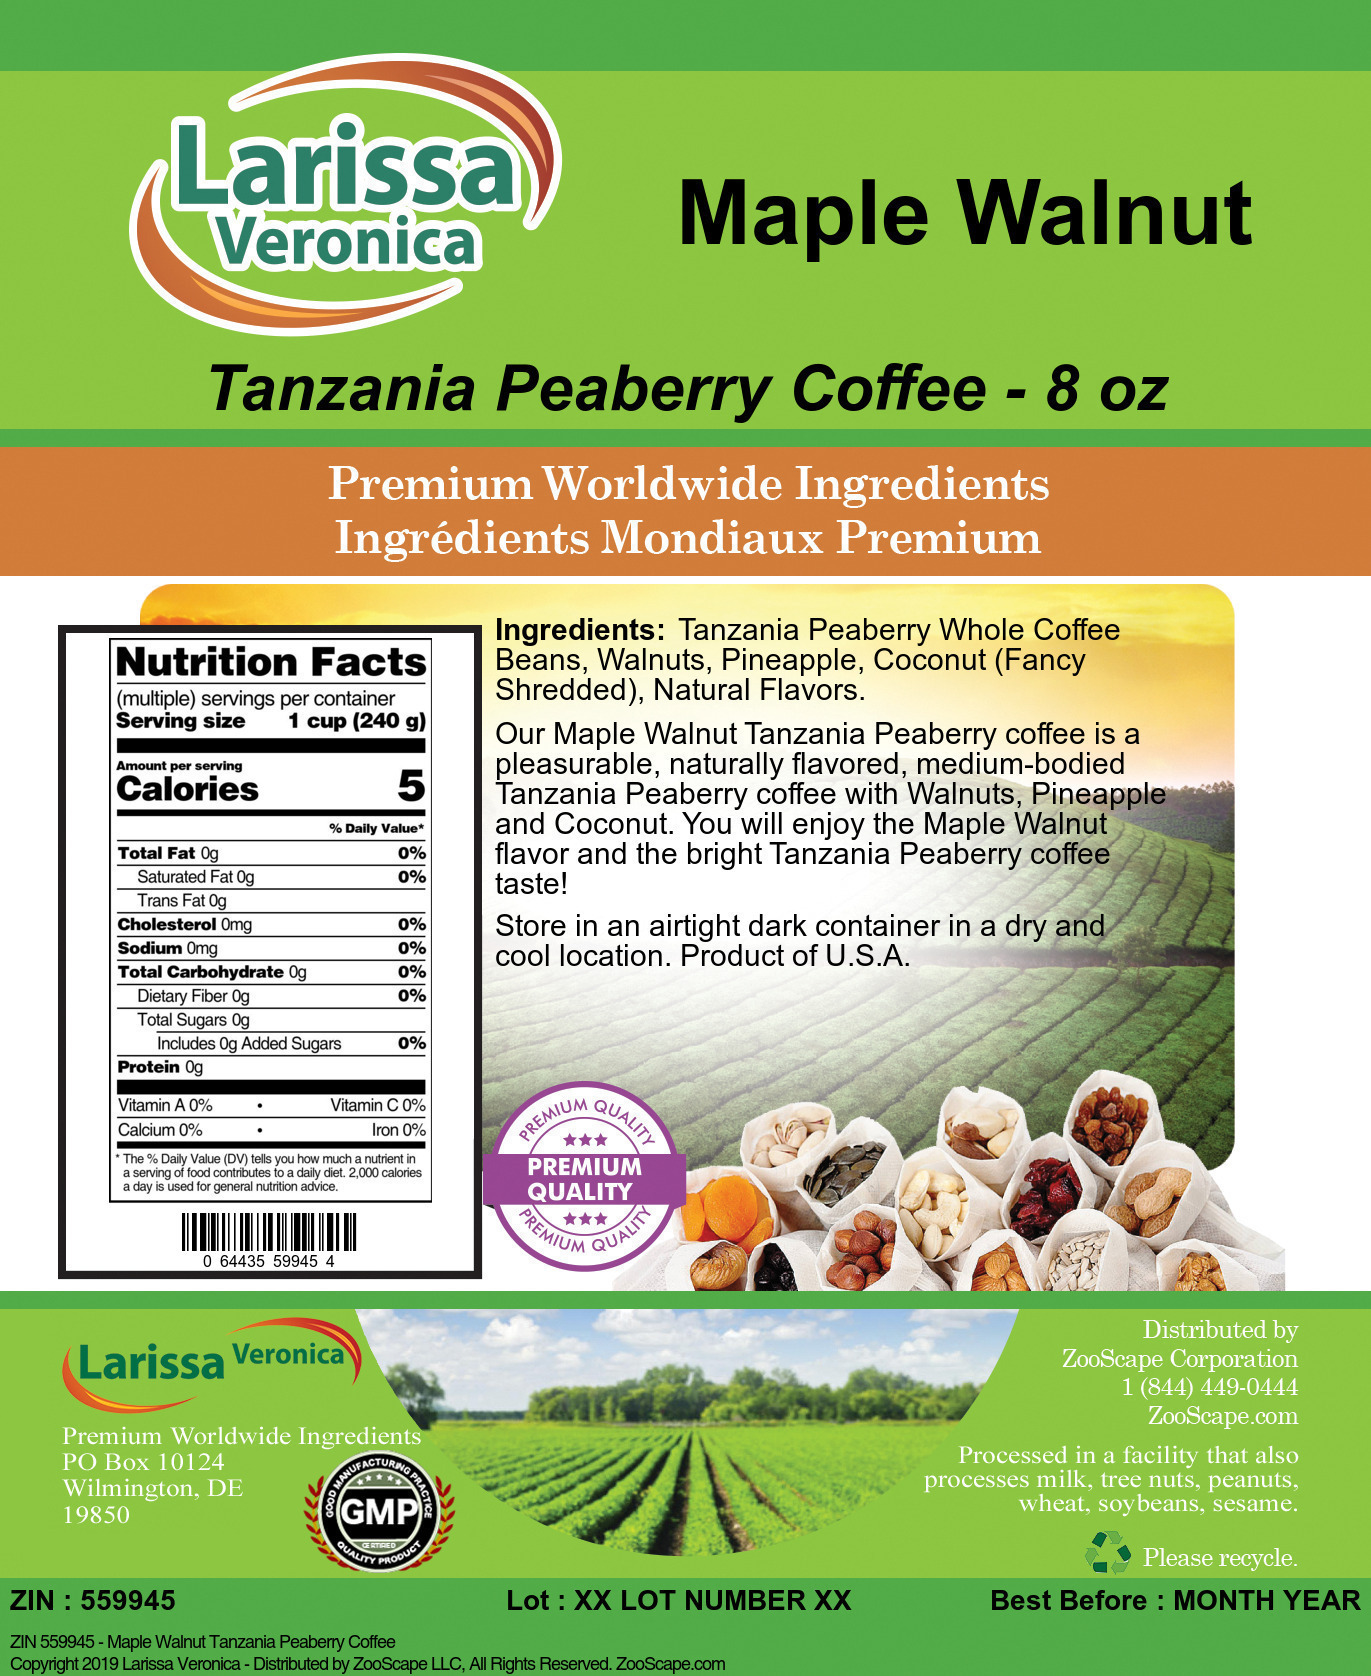 Maple Walnut Tanzania Peaberry Coffee - Label